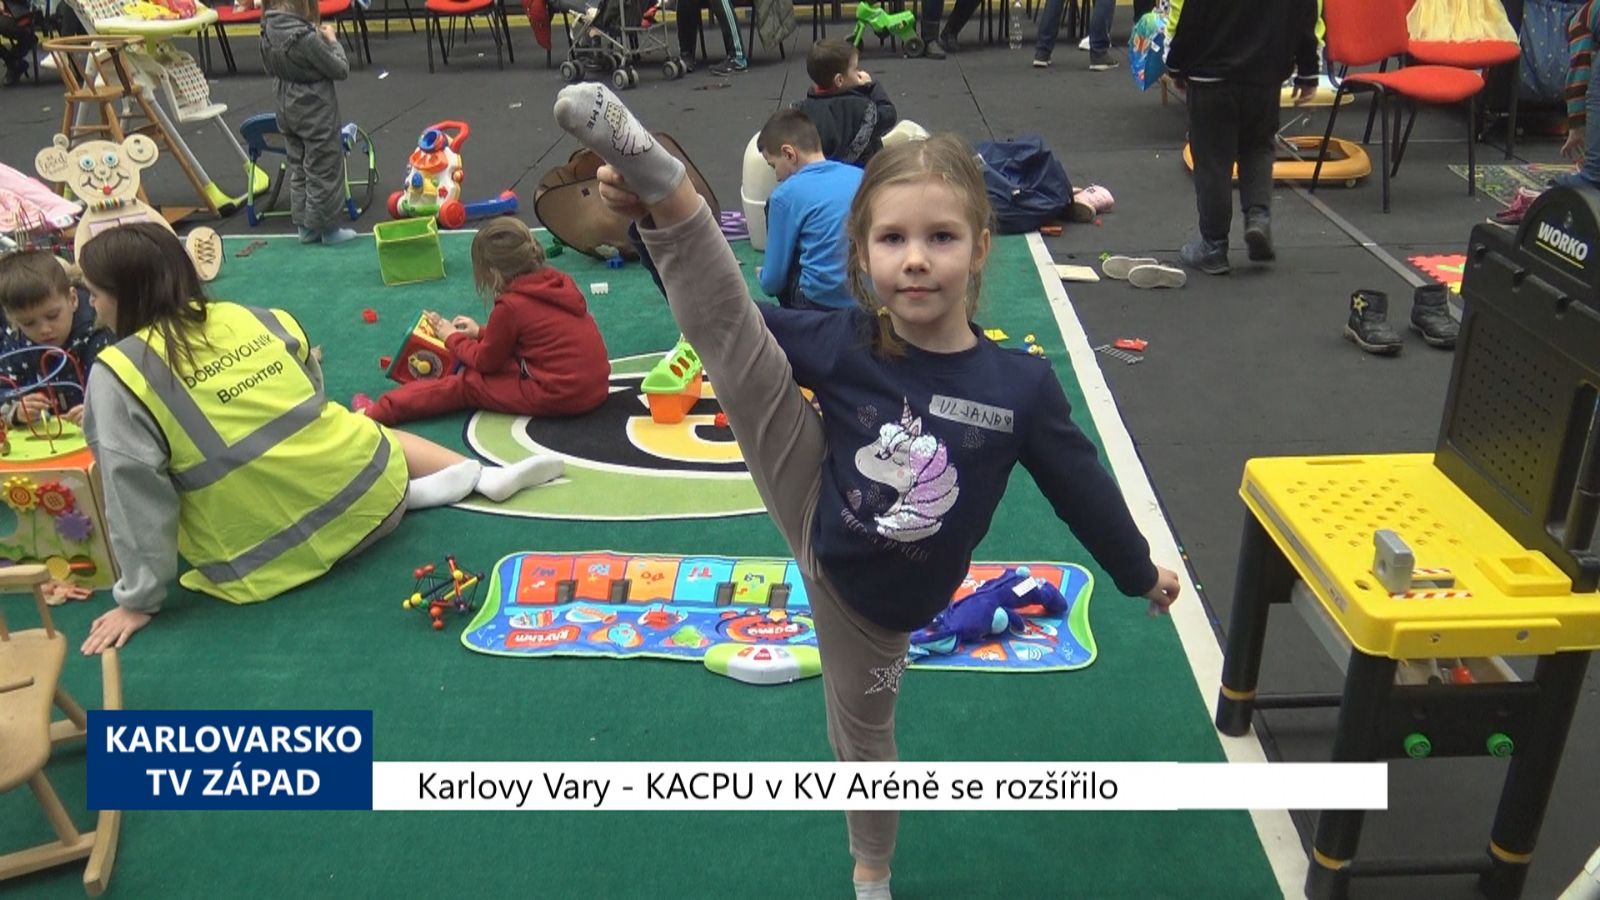 Karlovy Vary: KACPU v KV Aréně se rozšířilo (TV Západ)